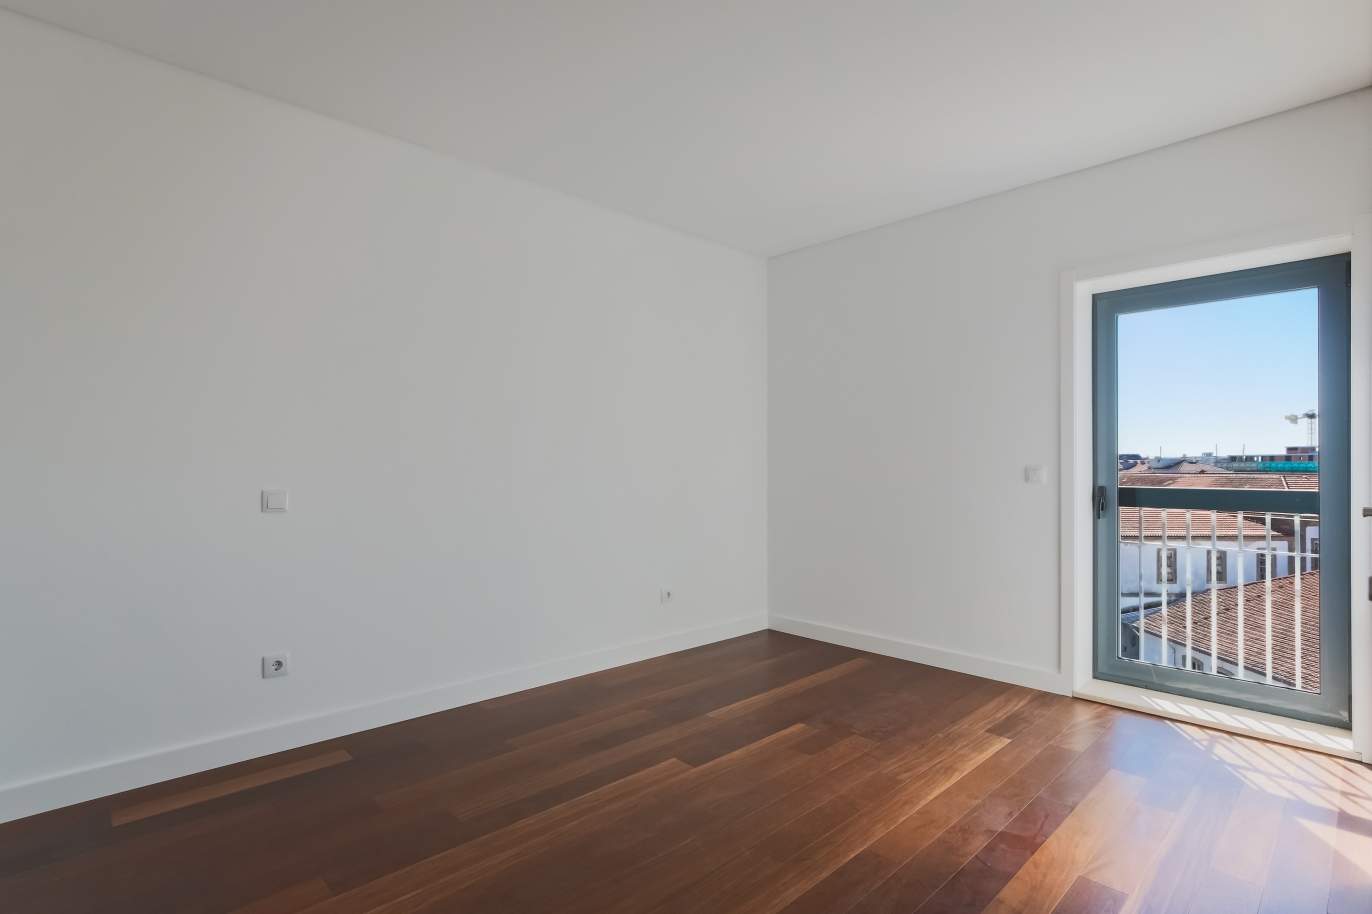 Sale of apartment in central location, Boavista, Porto, Portugal_122286